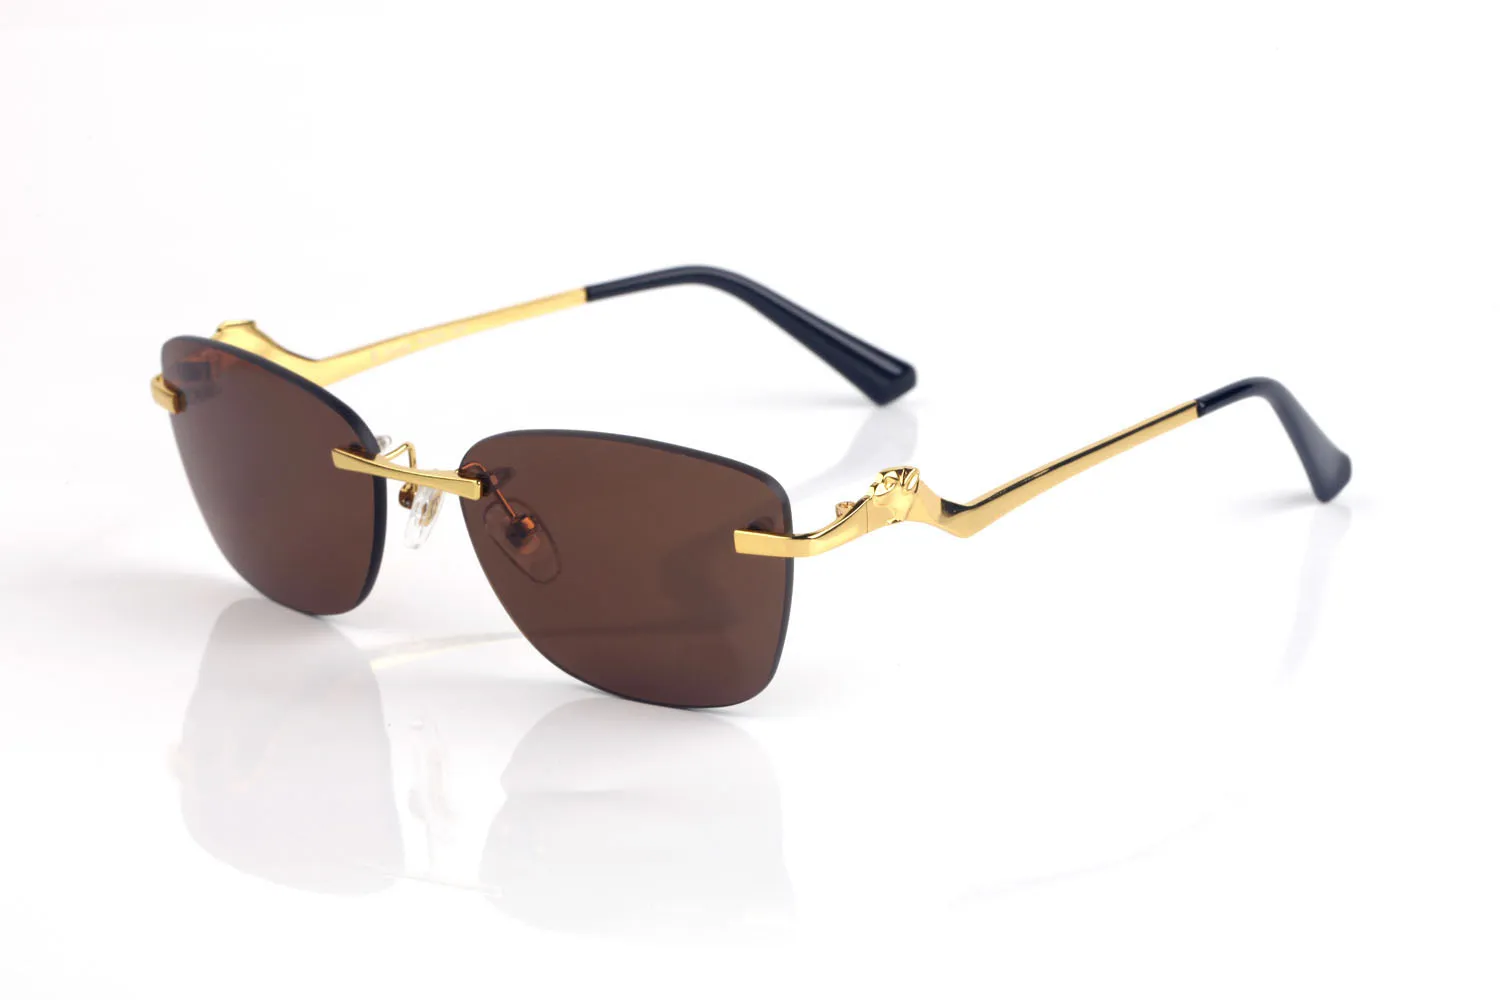 Vintage Bezprzewodowe okulary przeciwsłoneczne marka projekt okularów słonecznych dla mężczyzn metalowy malutki drut stop nieregularny rama przezroczysty obiektyw żeńskie męskie okulary L255p